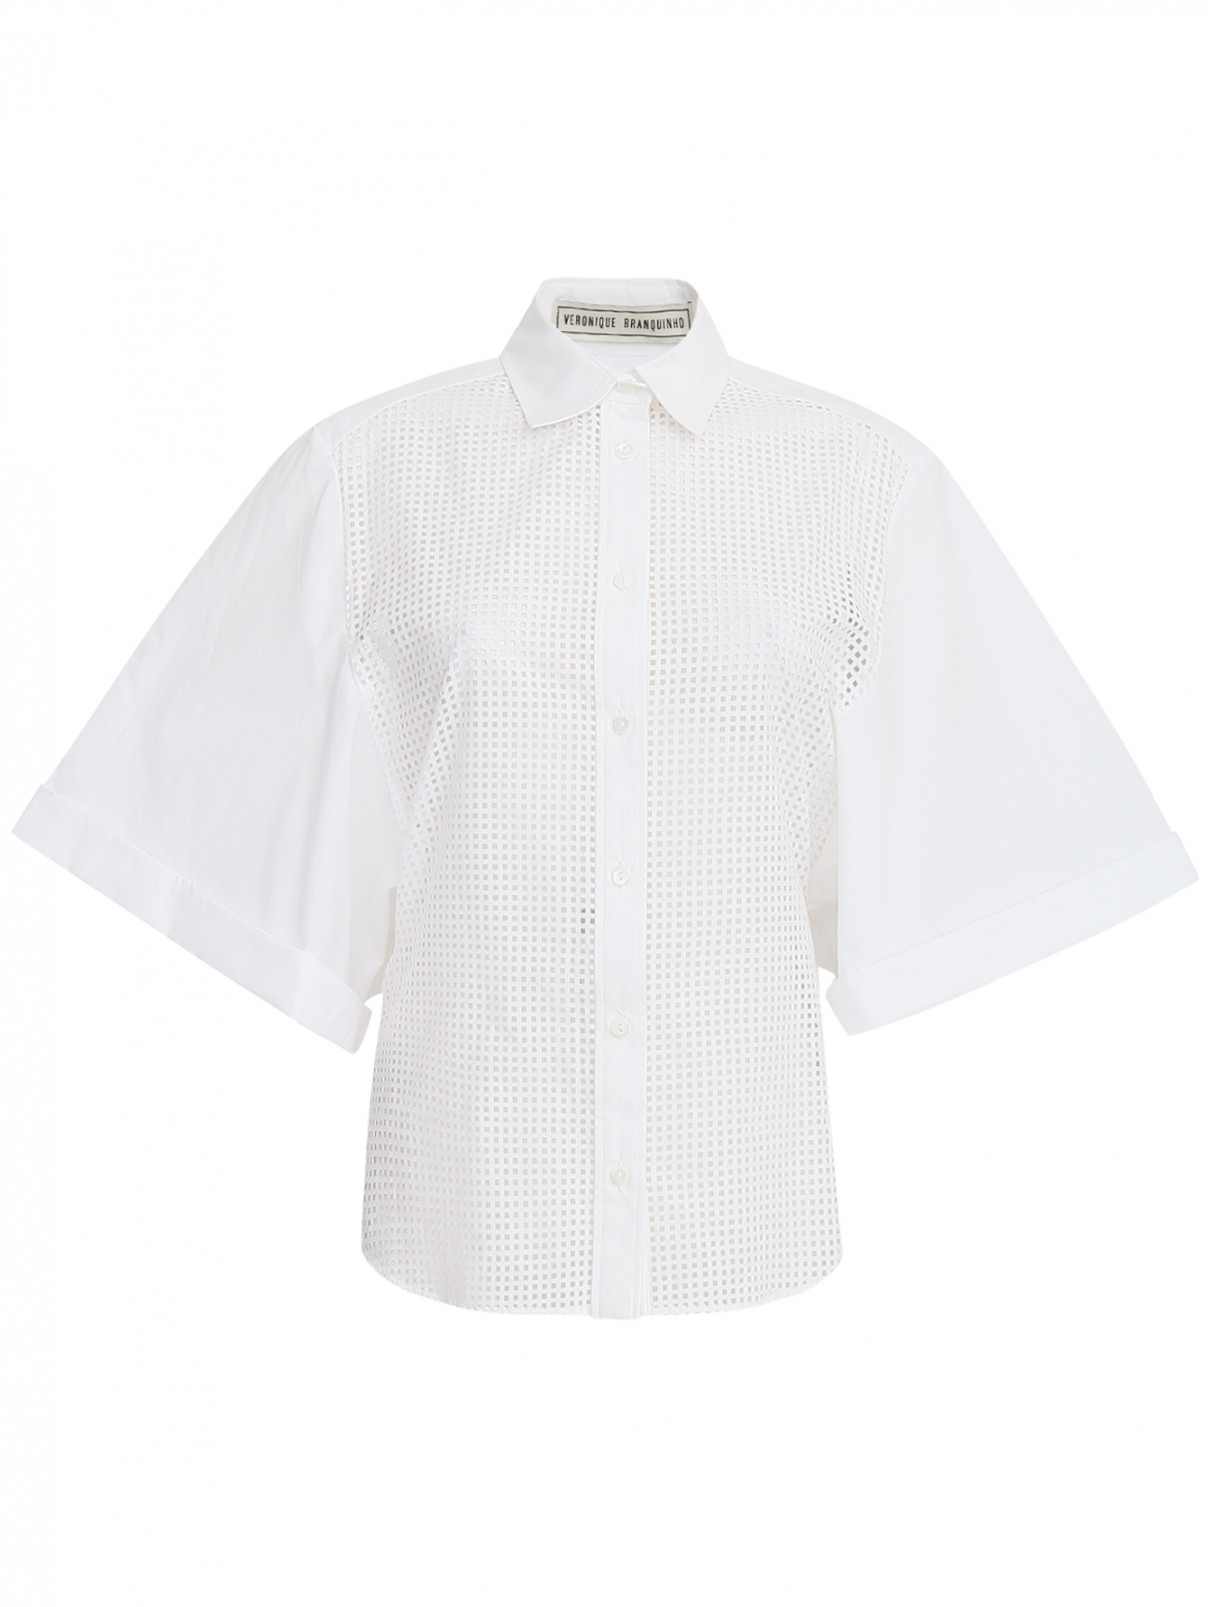 Блуза из хлопка с перфорацией Veronique Branquinho  –  Общий вид  – Цвет:  Белый